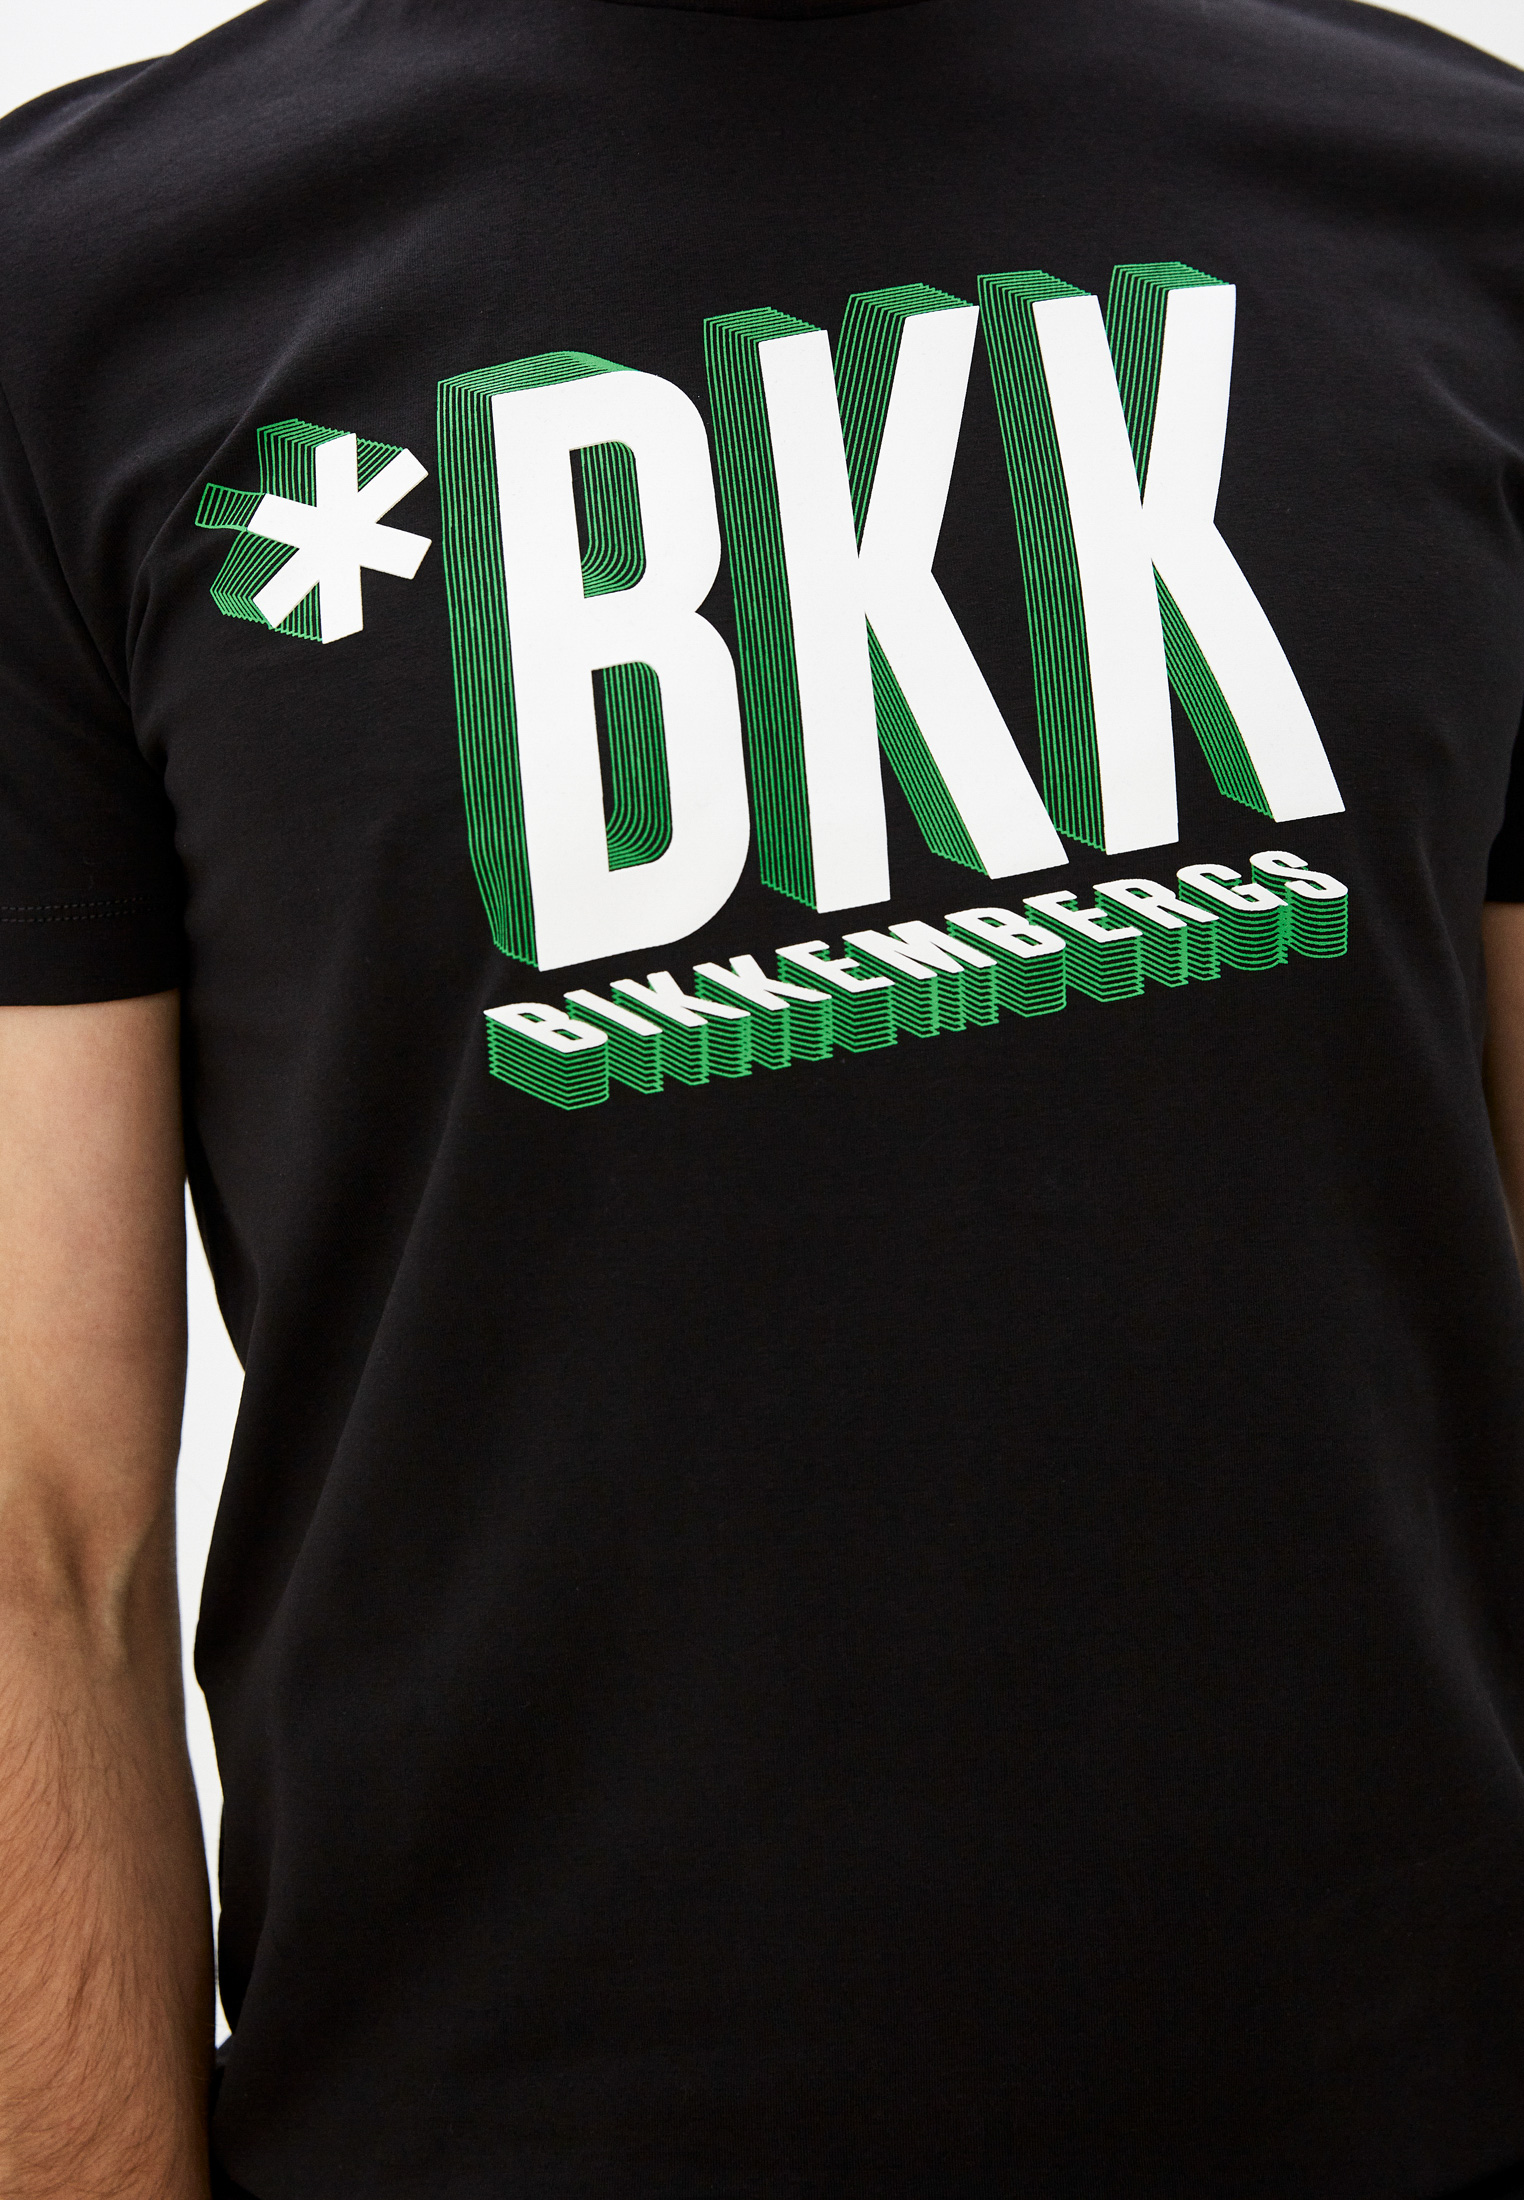 Мужская футболка Bikkembergs (Биккембергс) C 4 101 48 E 2296: изображение 5